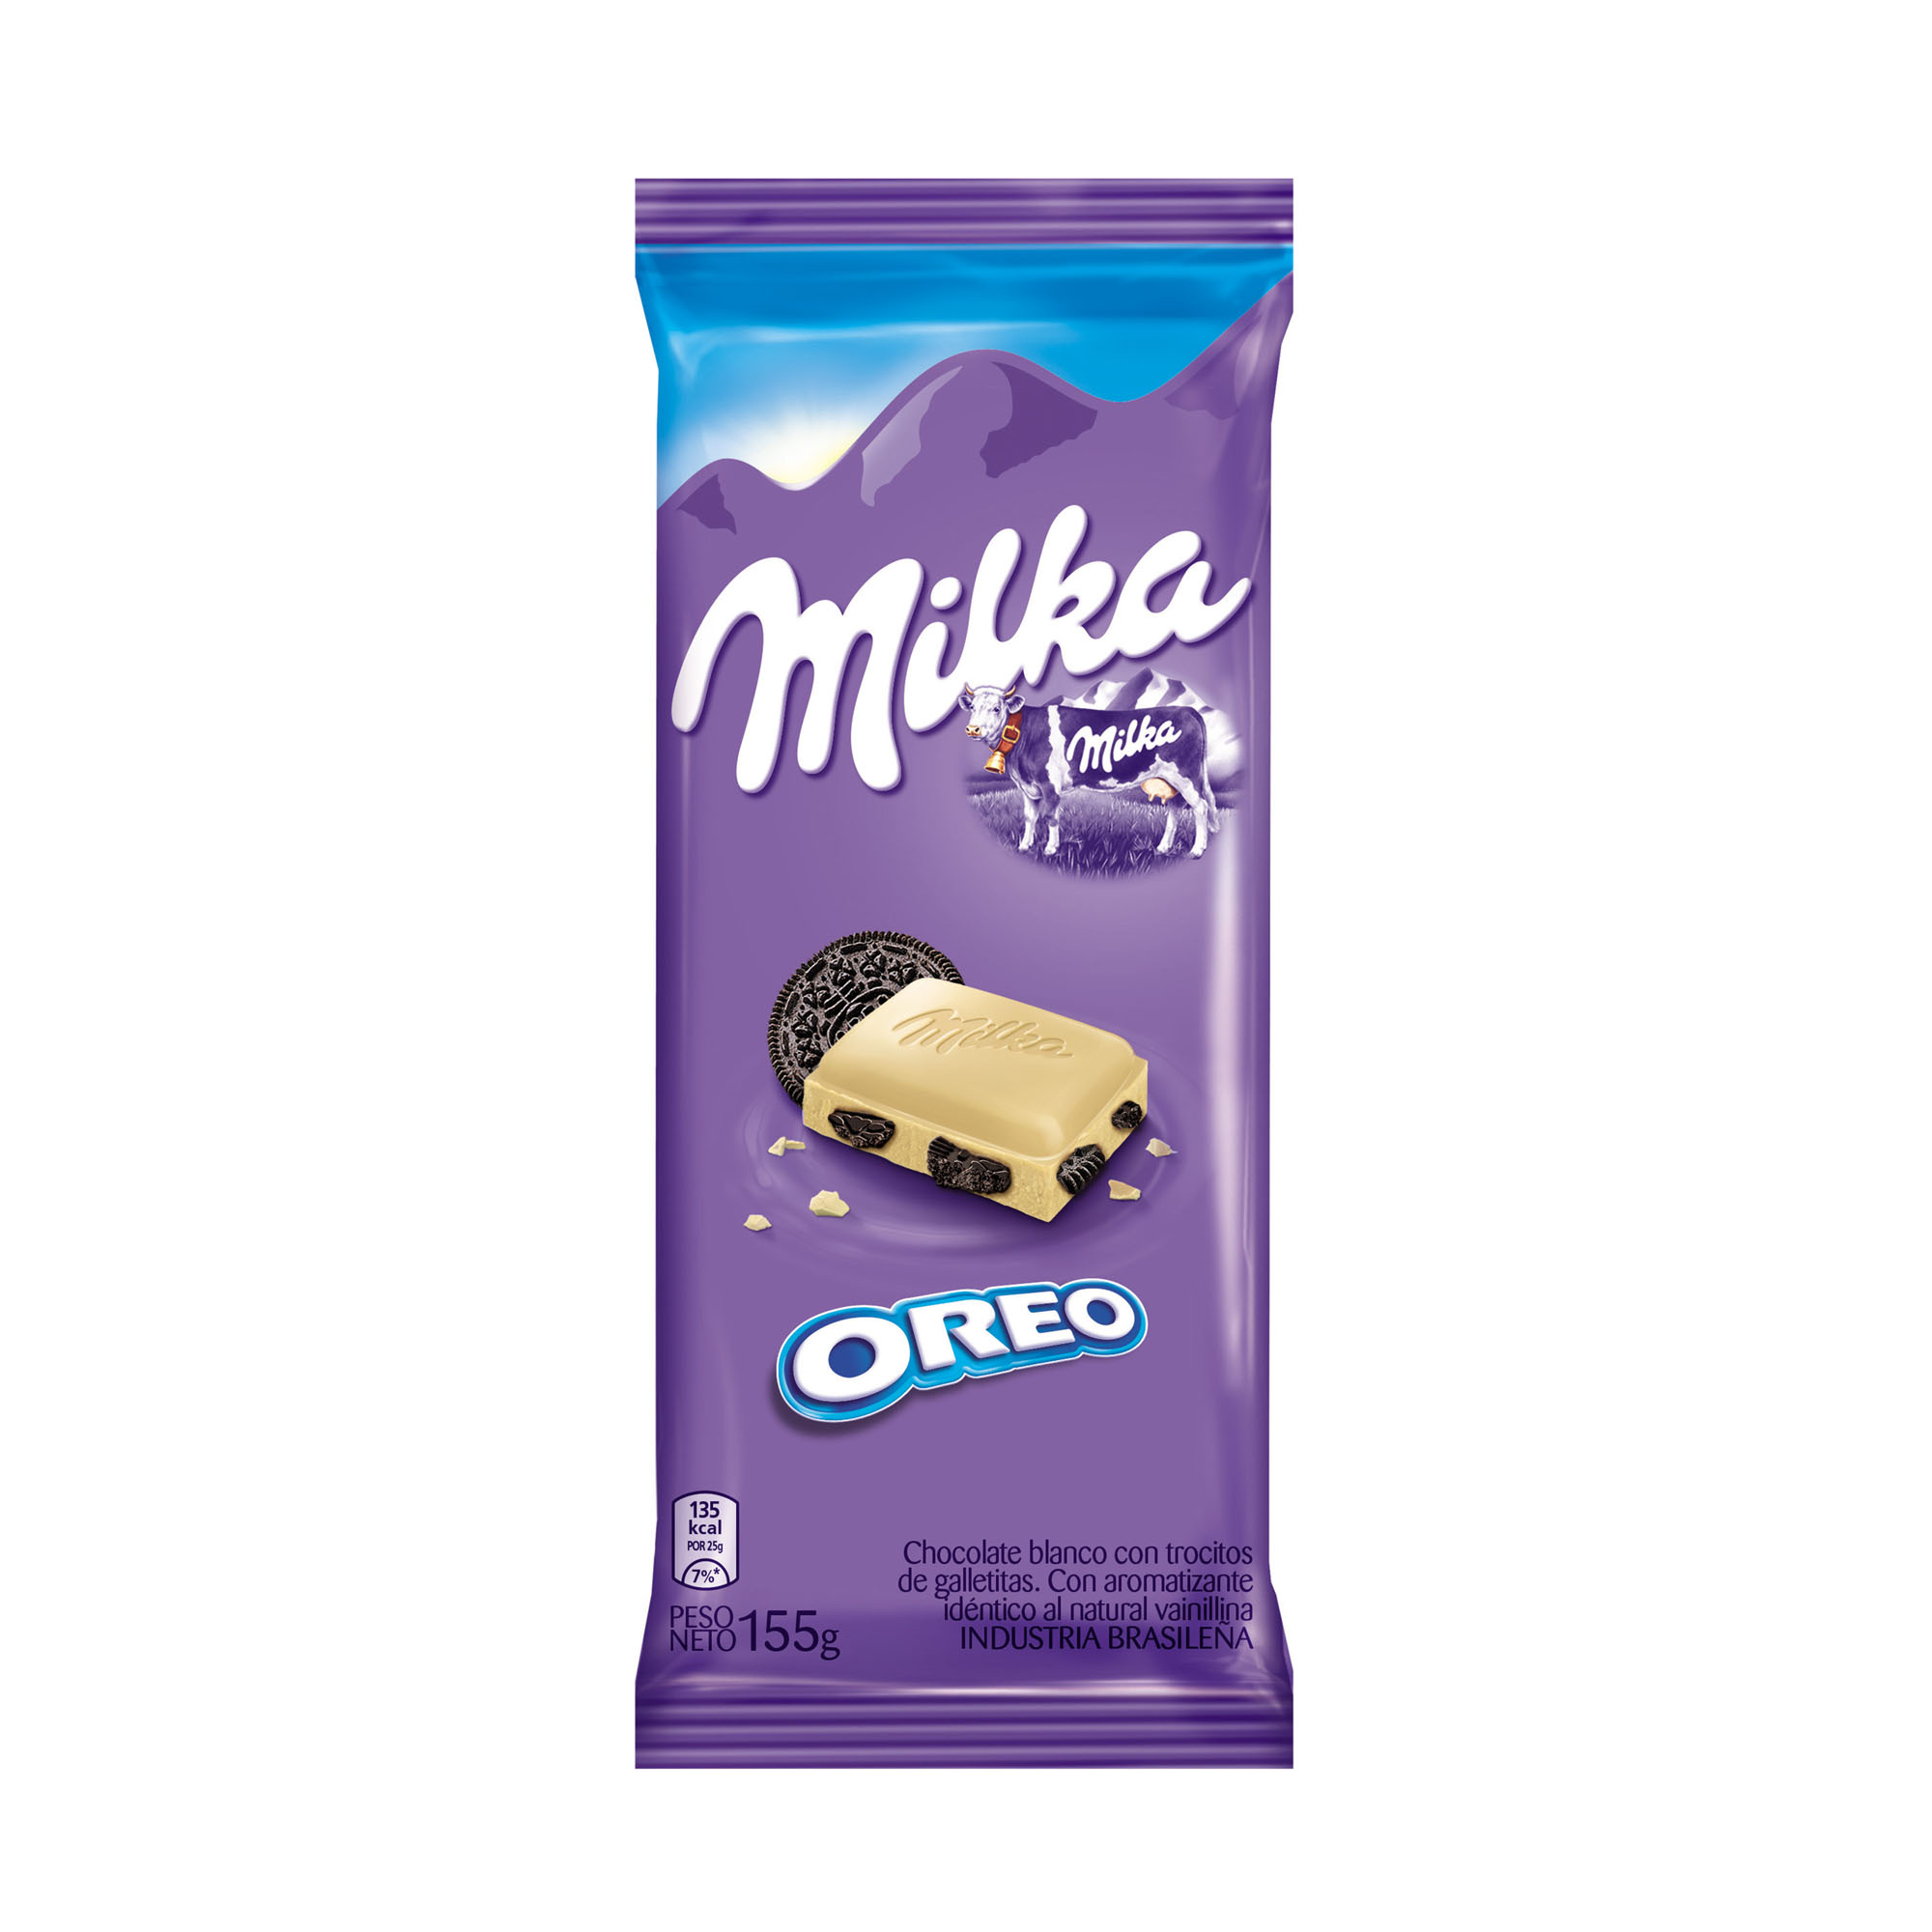 Milka Oreo Chocolate Blanco con Trocitos de Galletitas White